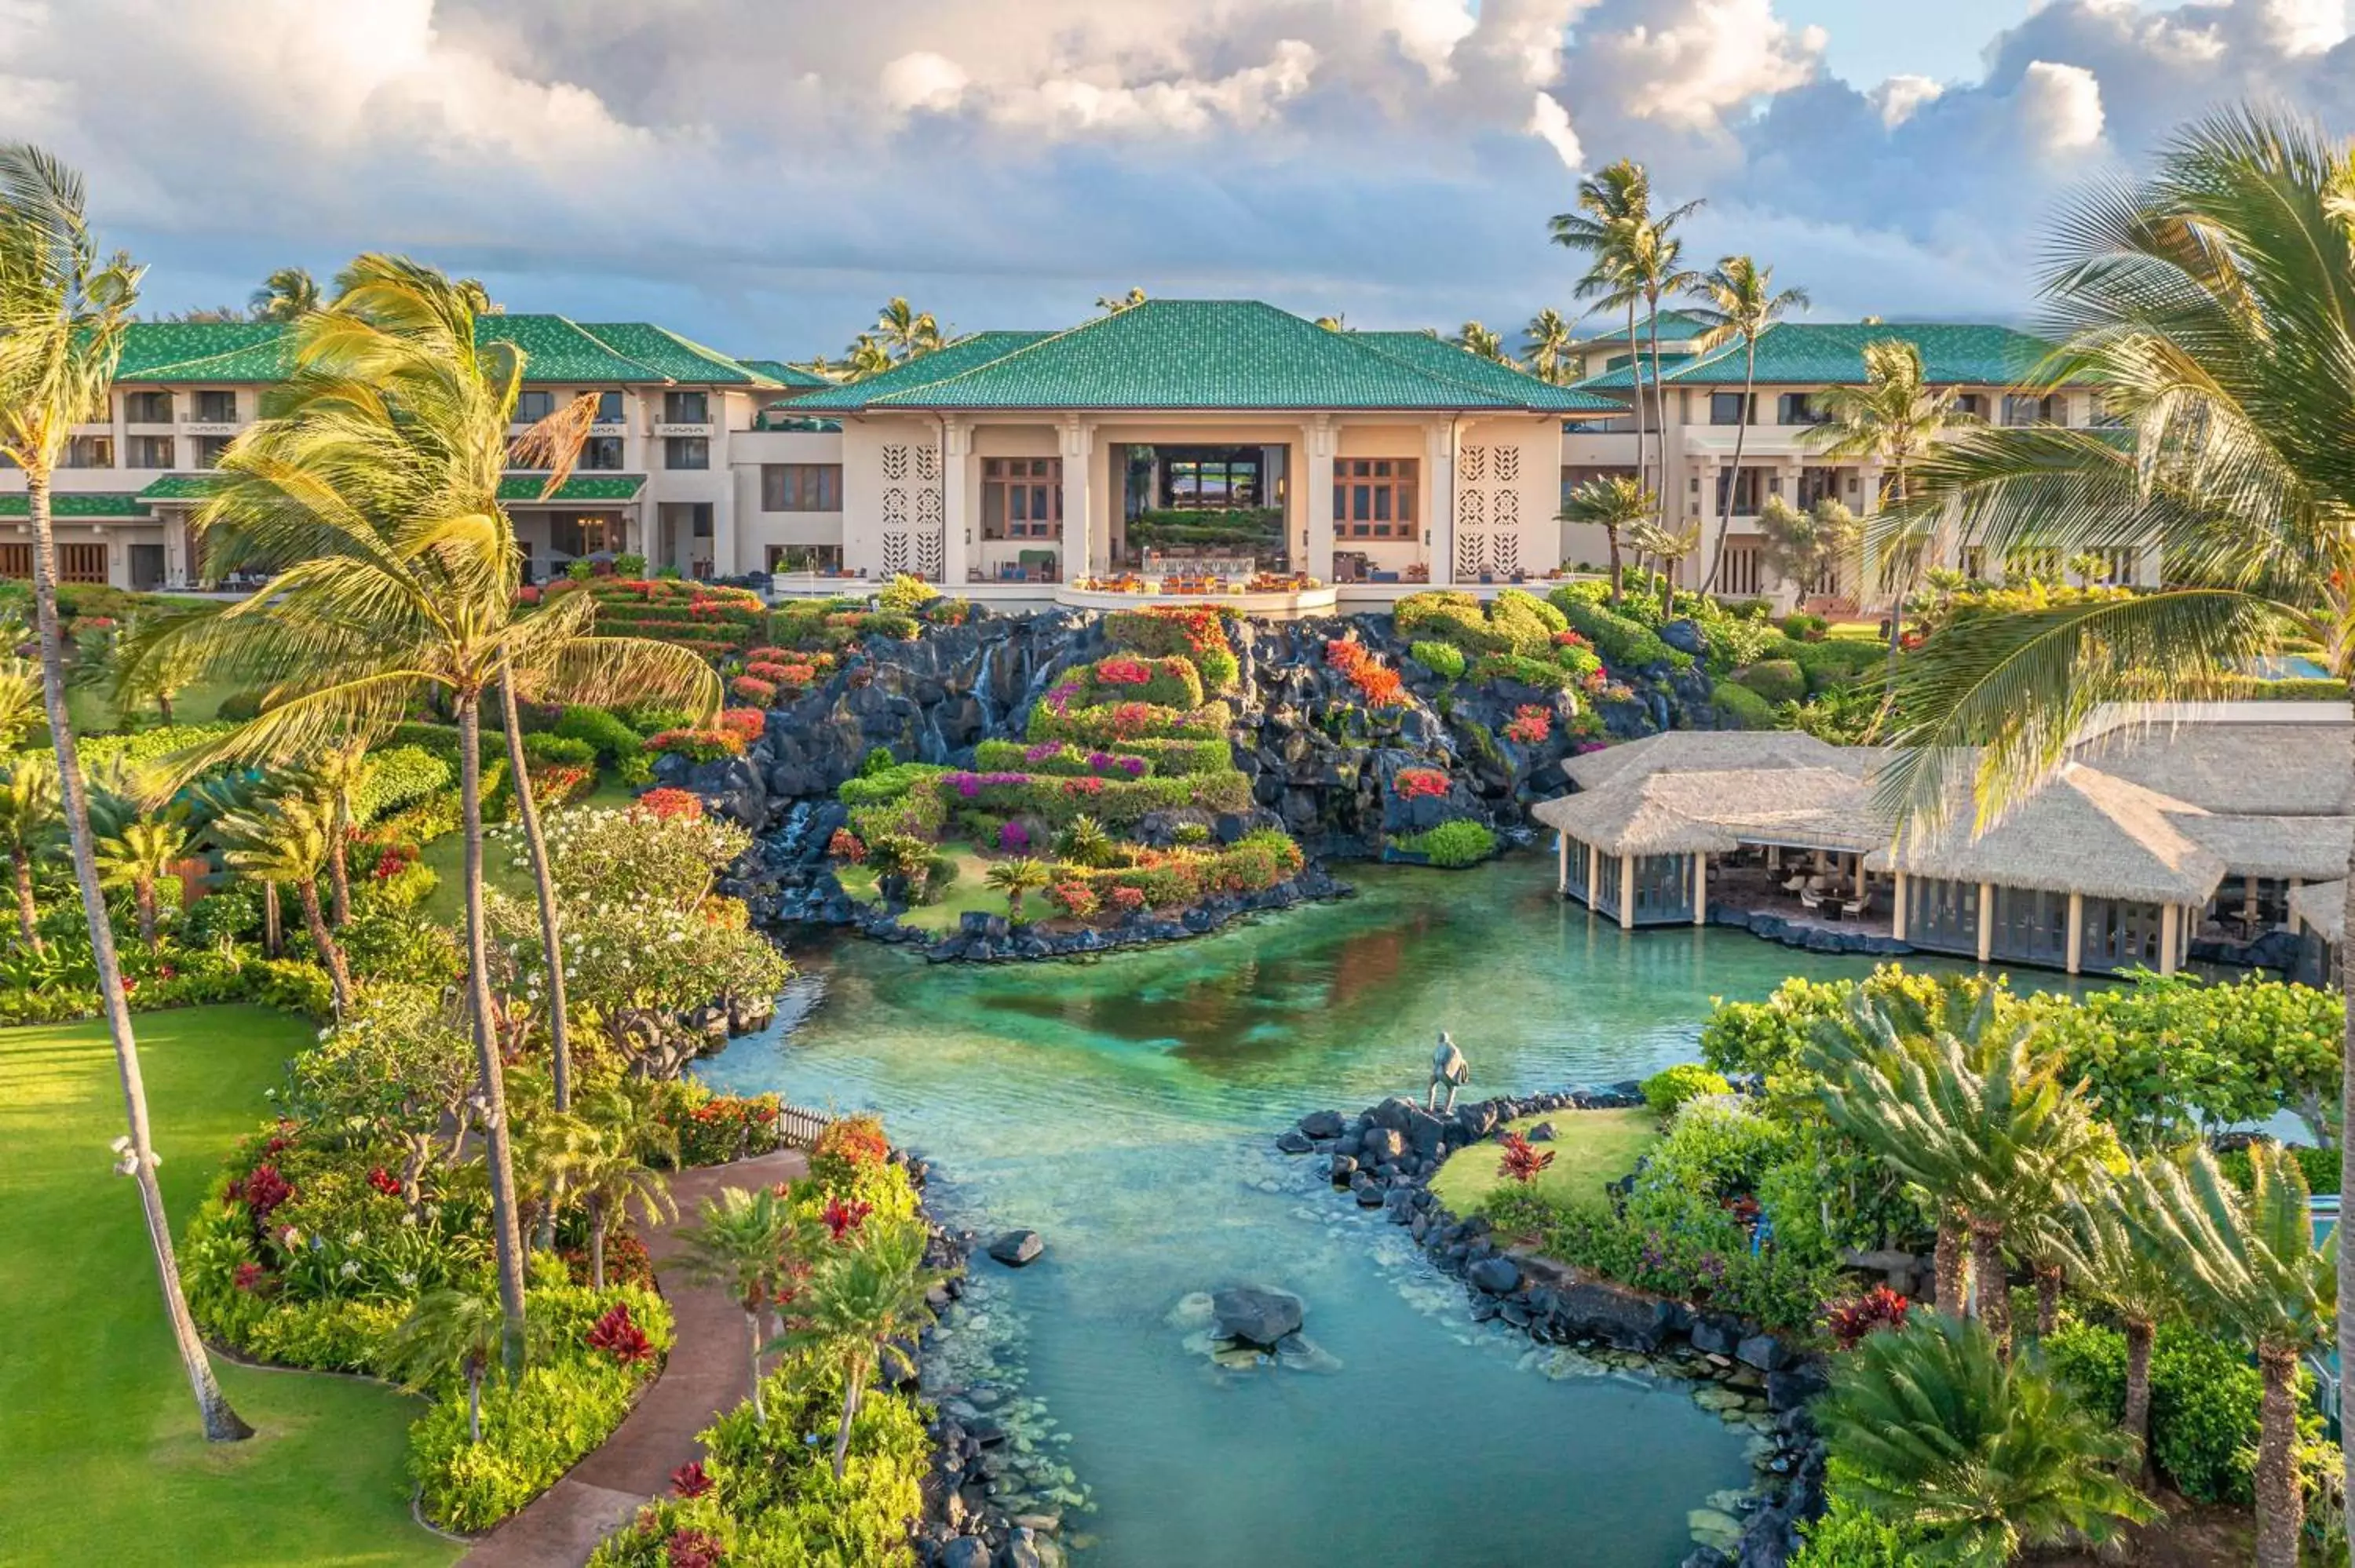 Property building in Grand Hyatt Kauai Resort & Spa